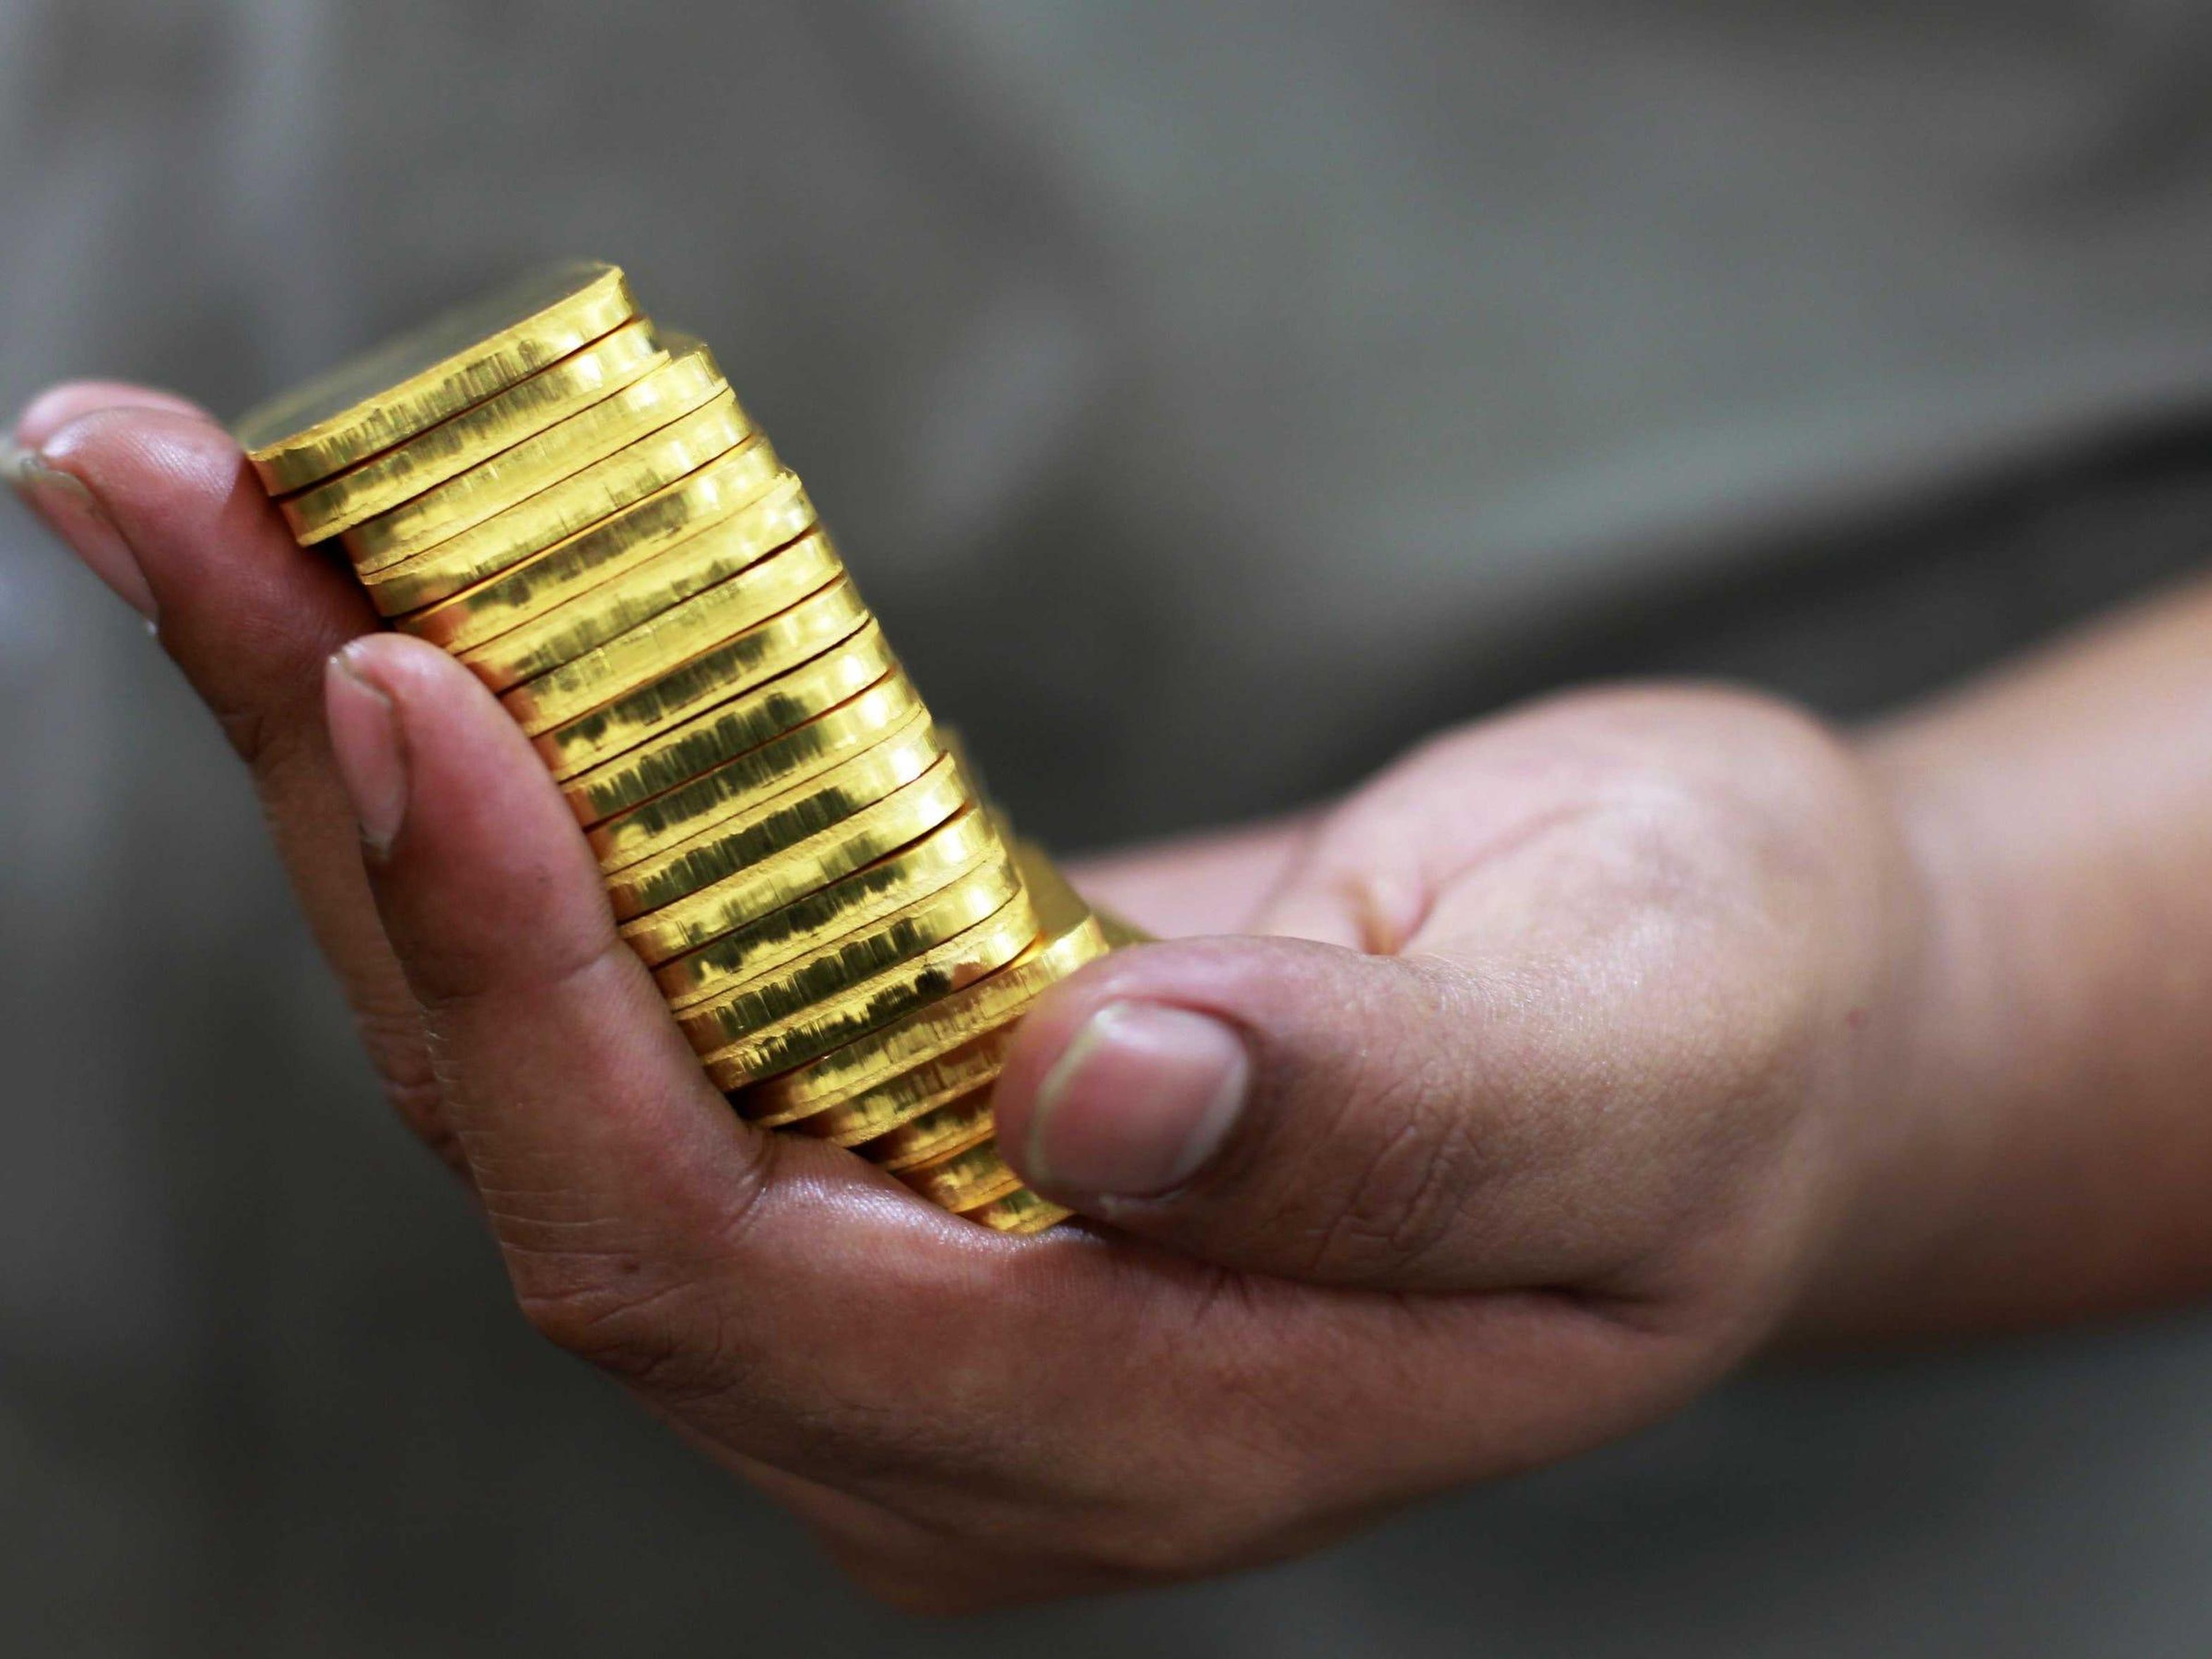 Un banco suizo vende la mitad de sus reservas en oro, pese a que su precio bate récords.